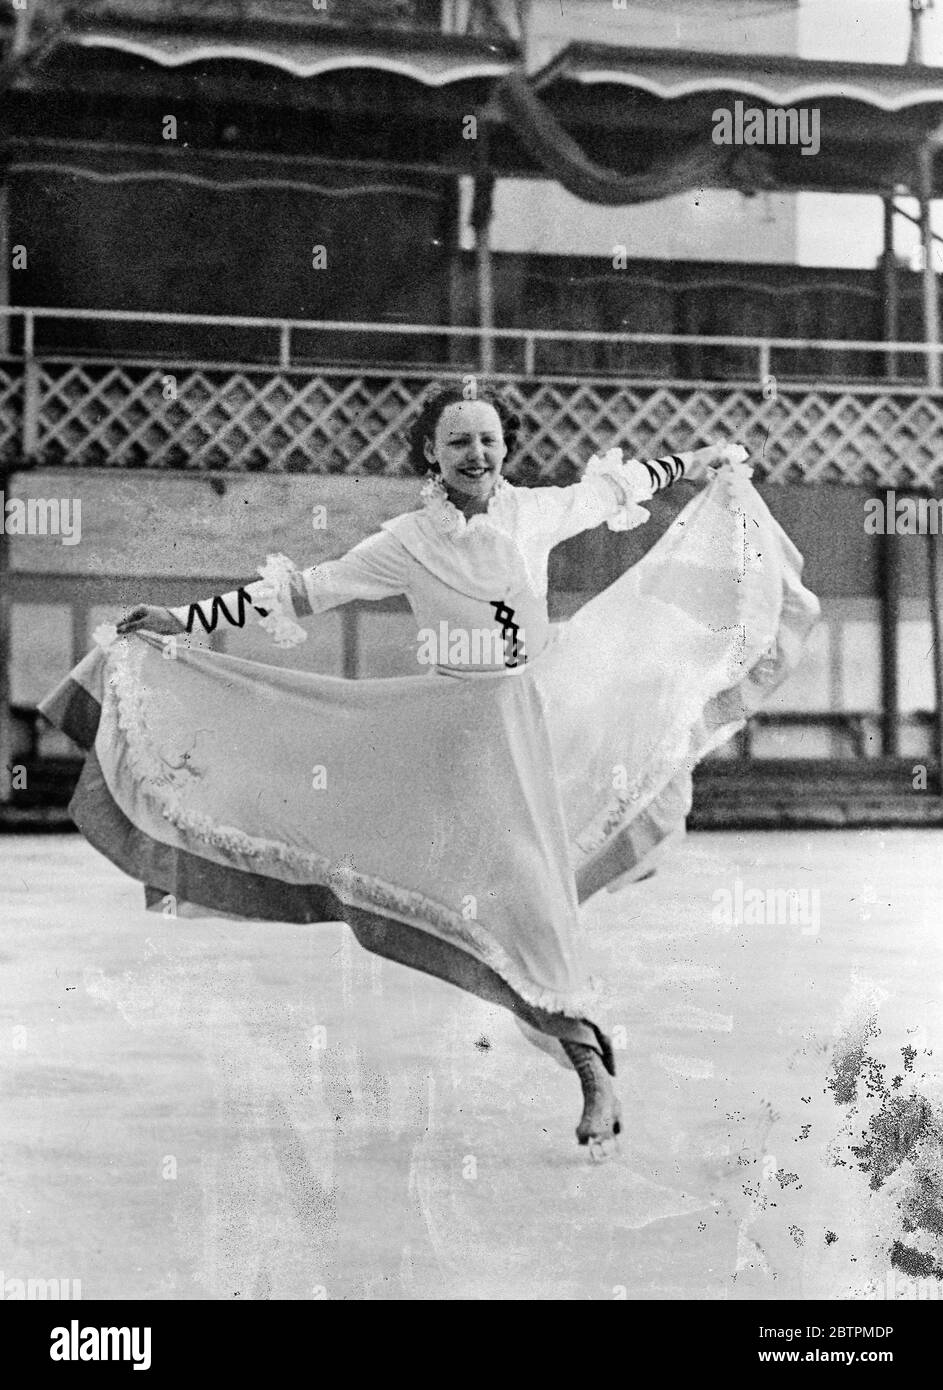 Lei pattina in gonne . Fraulein Illy Holzmann , famoso skater austriaco , è così abile sul ghiaccio che si sente abbastanza sicura da avvolgere le sue gambe girevoli in gonne voliminose invece del vestito più slip favorito dalla maggior parte dei campioni . Spettacoli fotografici , Fraulein Illy Holzmann scivola sul ghiaccio nelle sue lunghe gonne in una mostra a Vienna . 29 novembre 1935 1936 Foto Stock